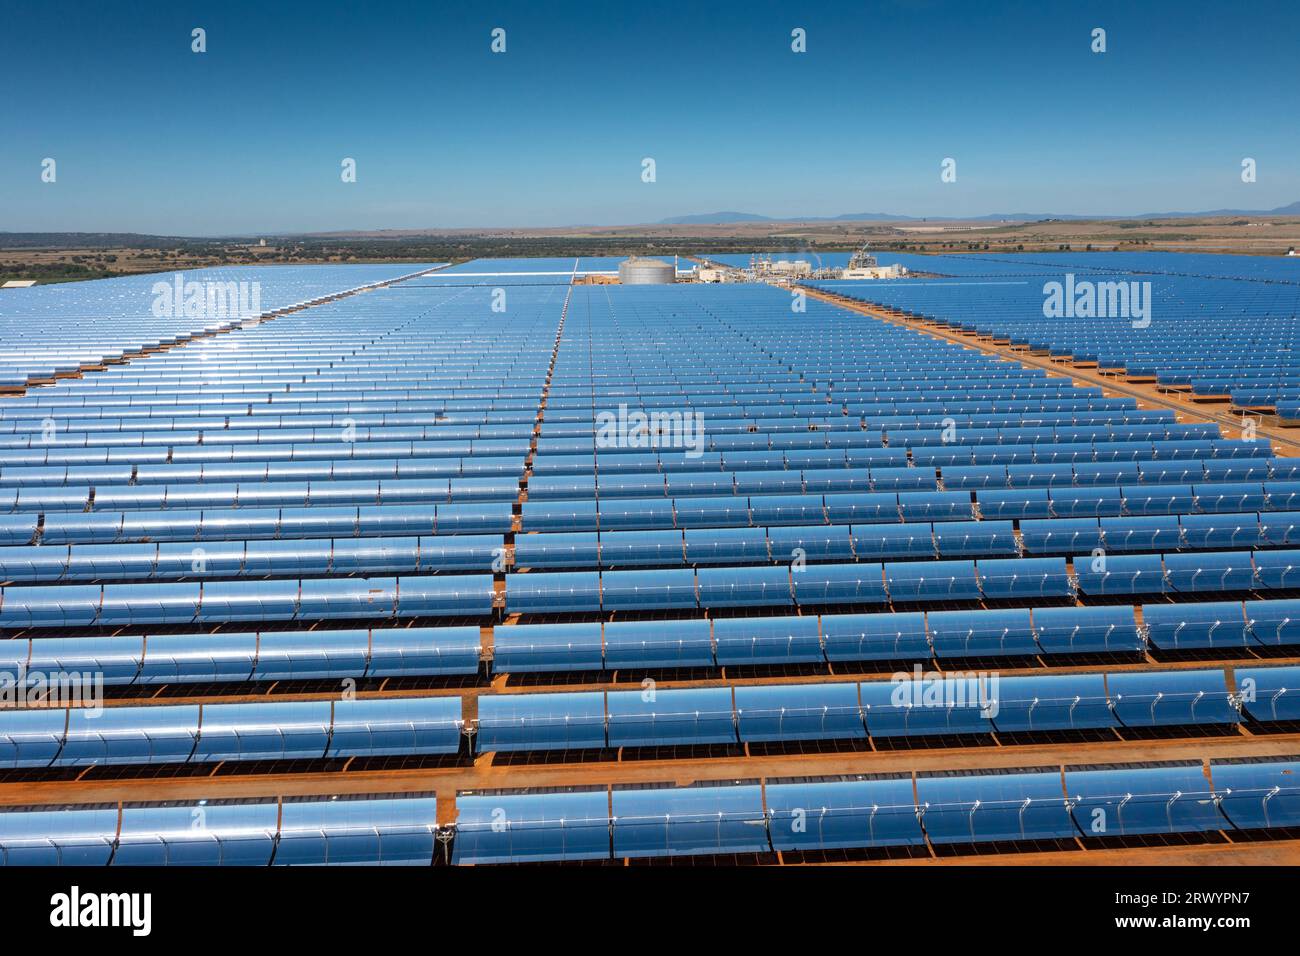 Expositor fotovoltaico con abrevaderos parabólicos, España, Extremadura, Madrigalejo Foto de stock